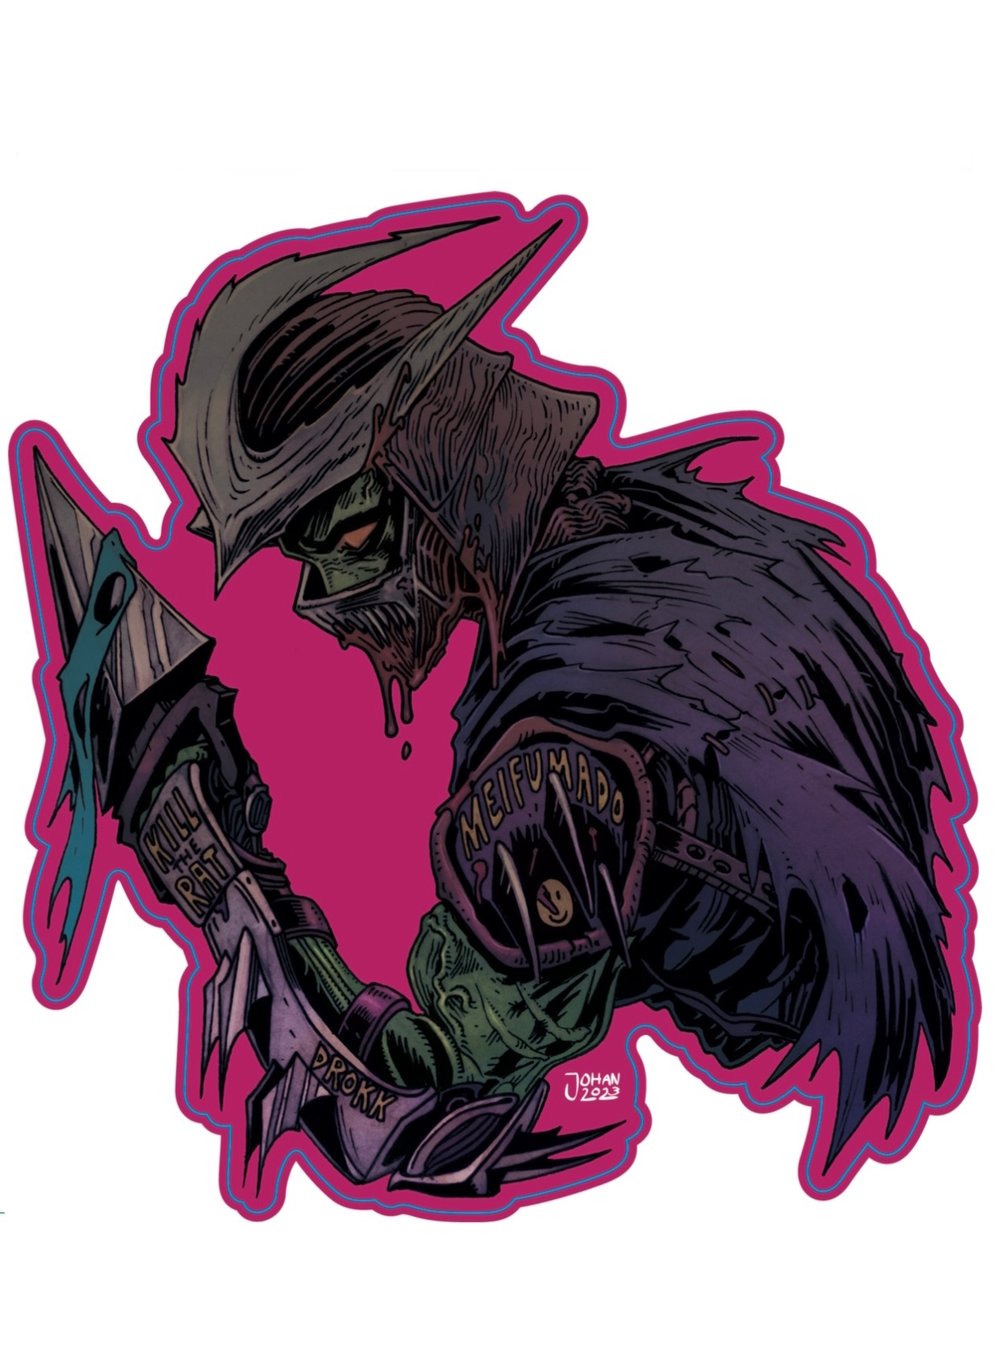 Image of Saki's Blade (Giant Sticker) by CyberNosferatu